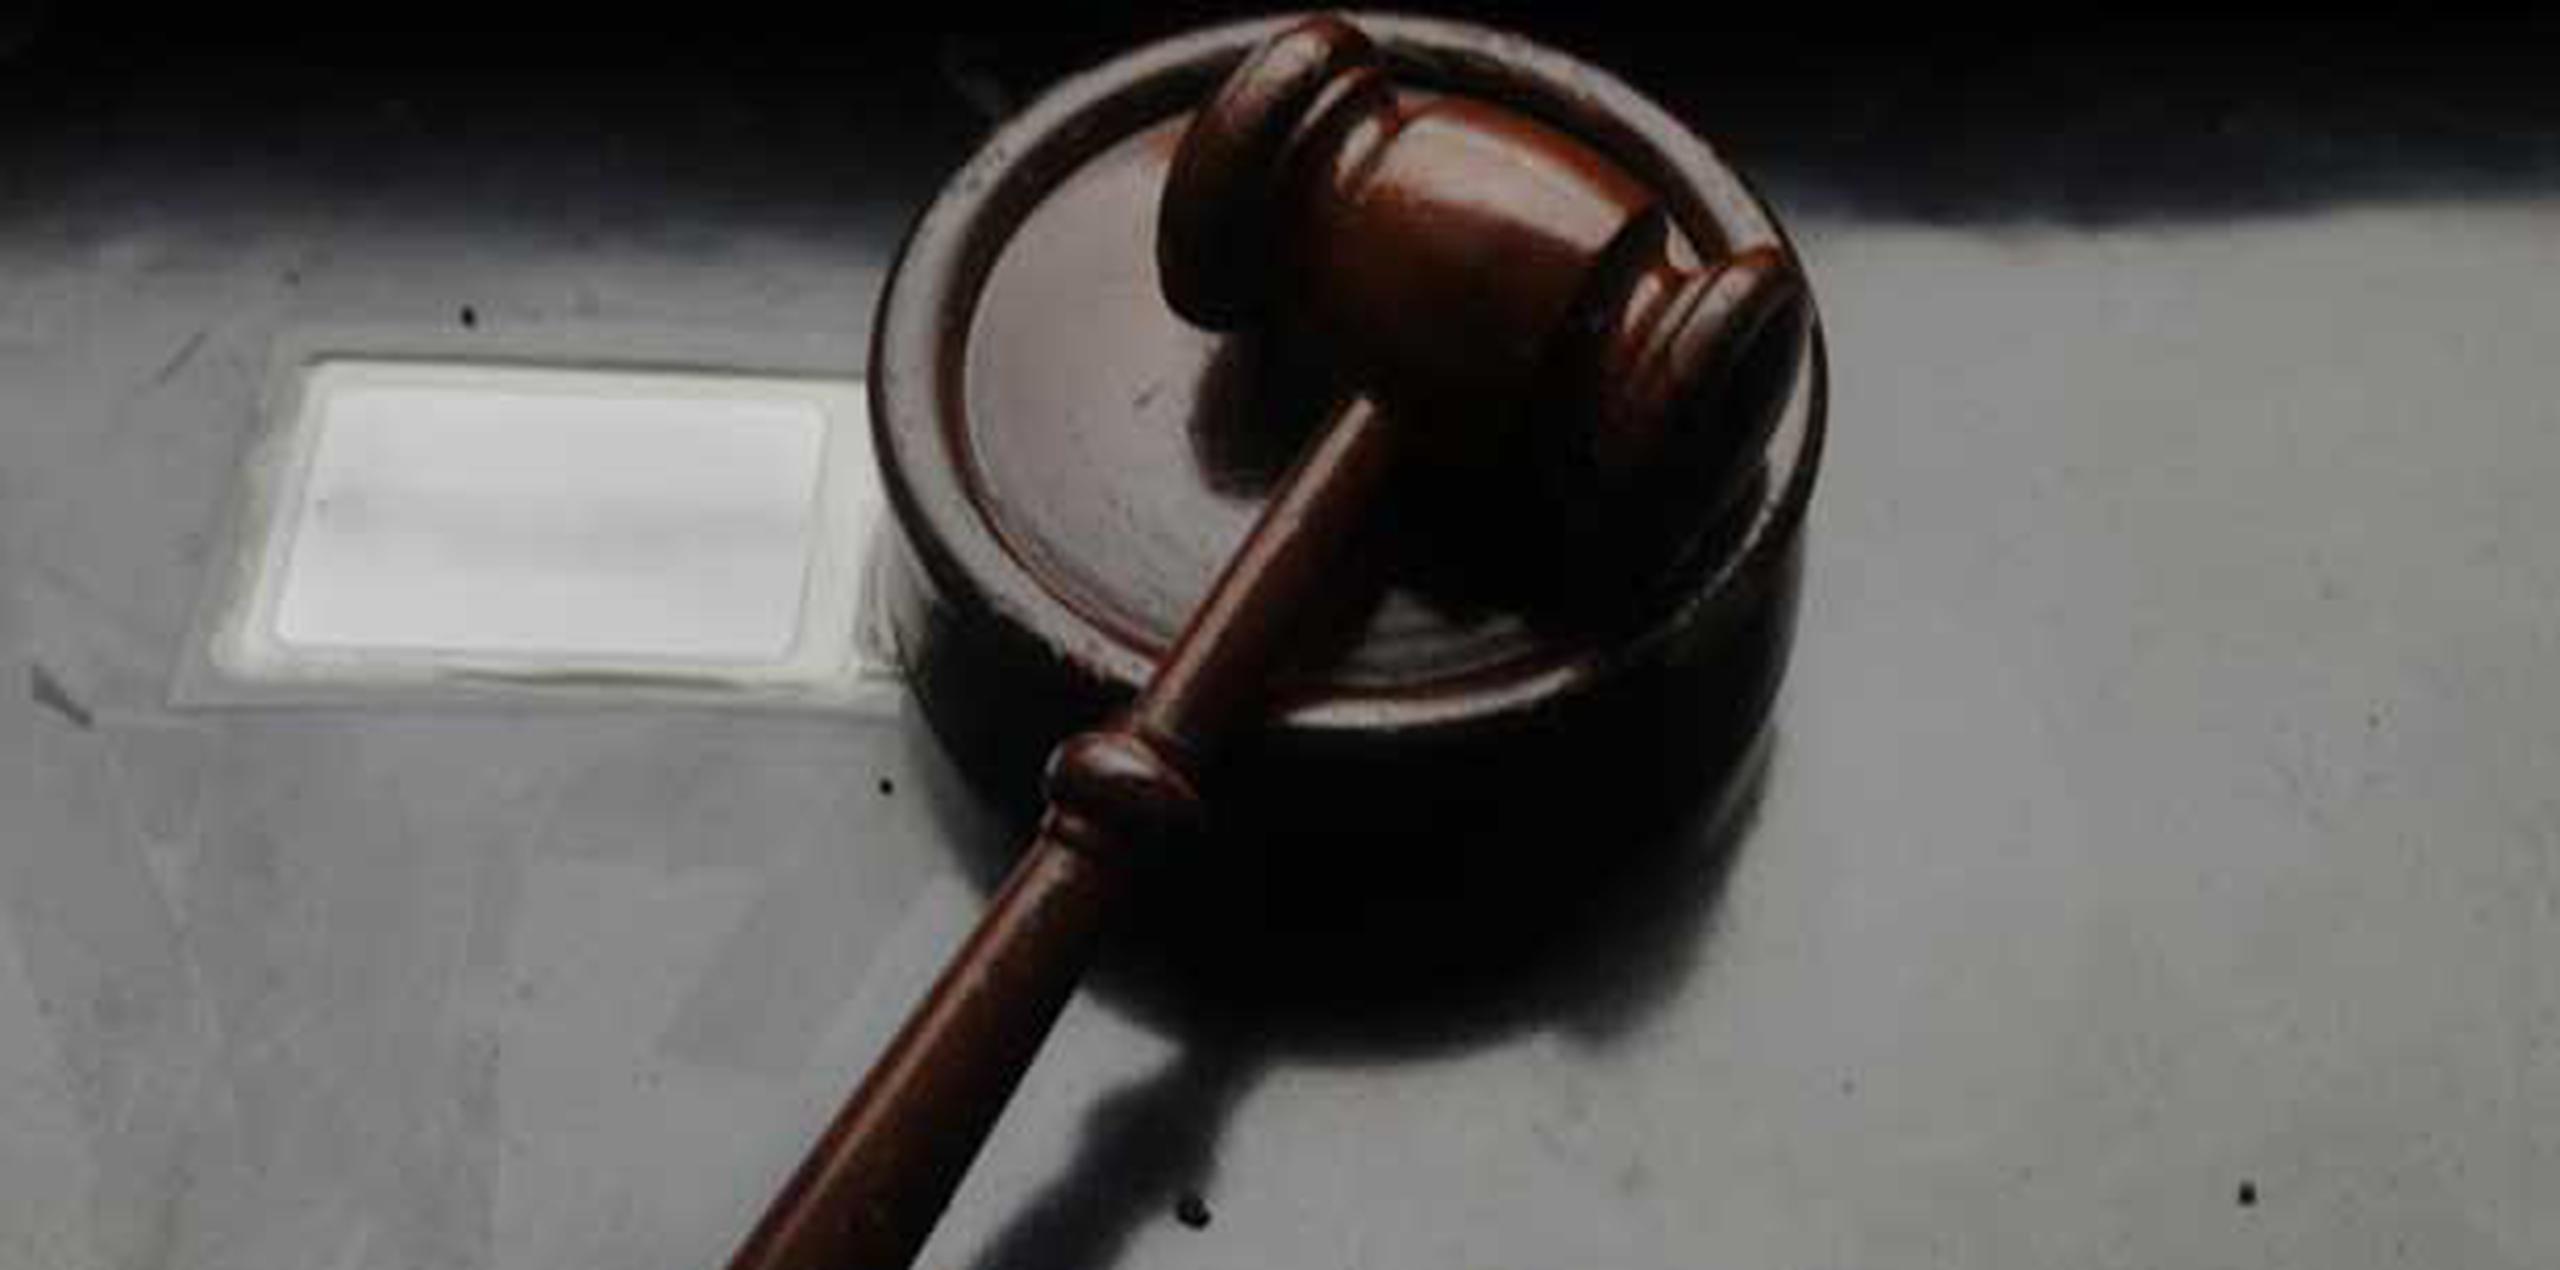 El juicio en su contra fue pautado para el 5 de octubre en la sala 305 del Tribunal de Arecibo. (Archivo)